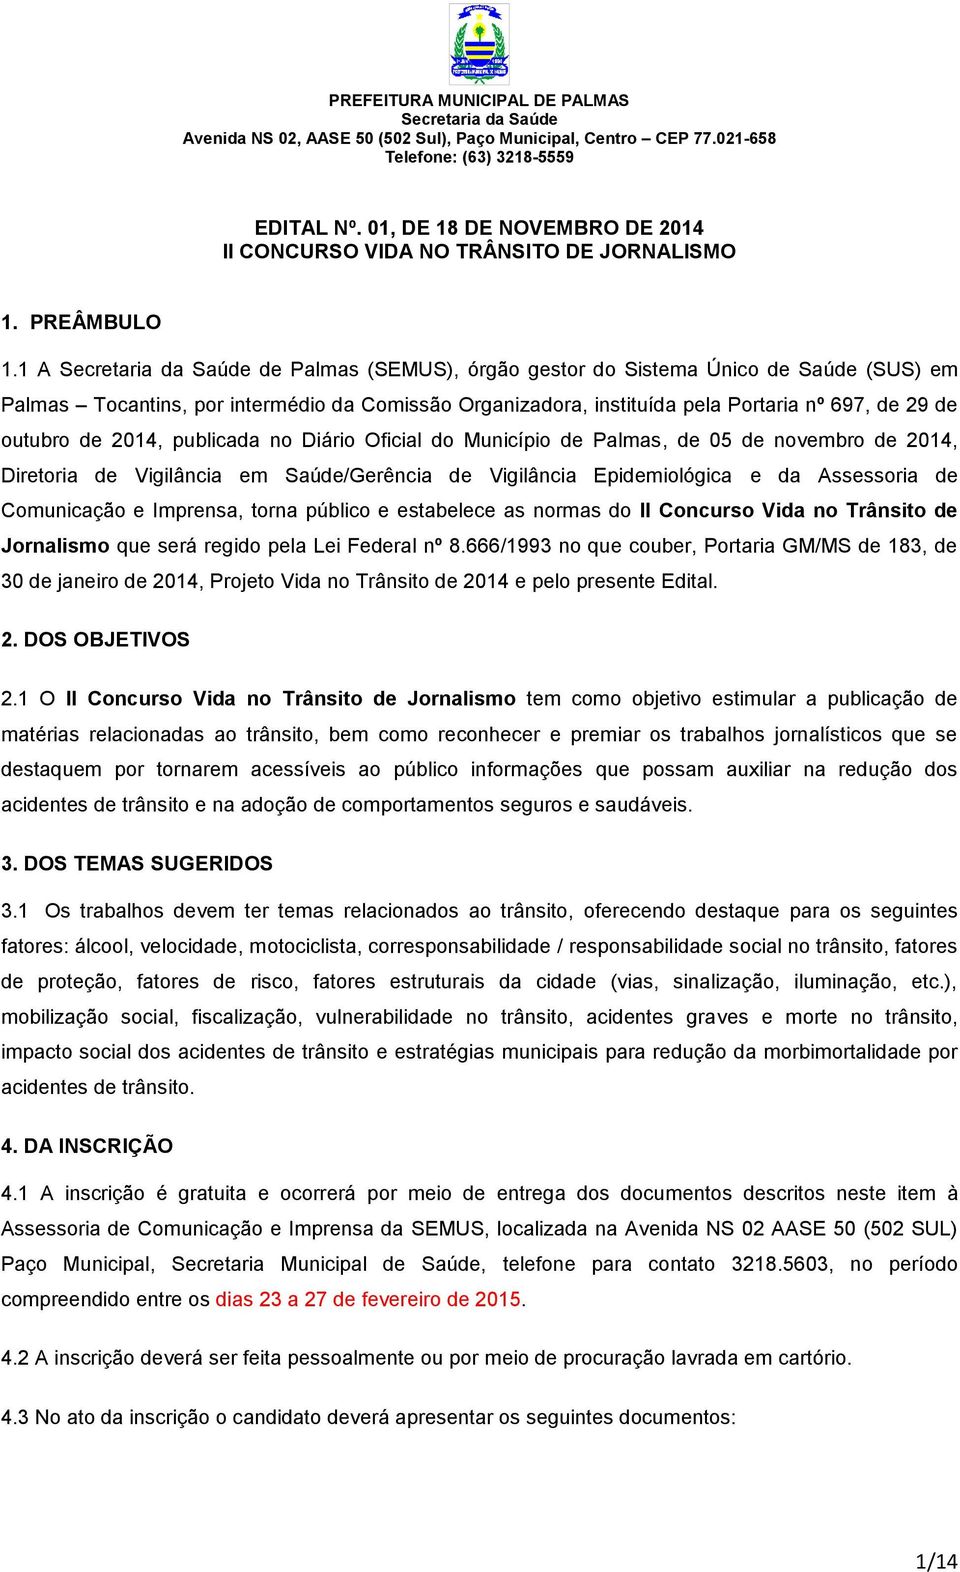 no Diário Oficial do Município de Palmas, de 05 de novembro de 2014, Diretoria de Vigilância em Saúde/Gerência de Vigilância Epidemiológica e da Assessoria de Comunicação e Imprensa, torna público e